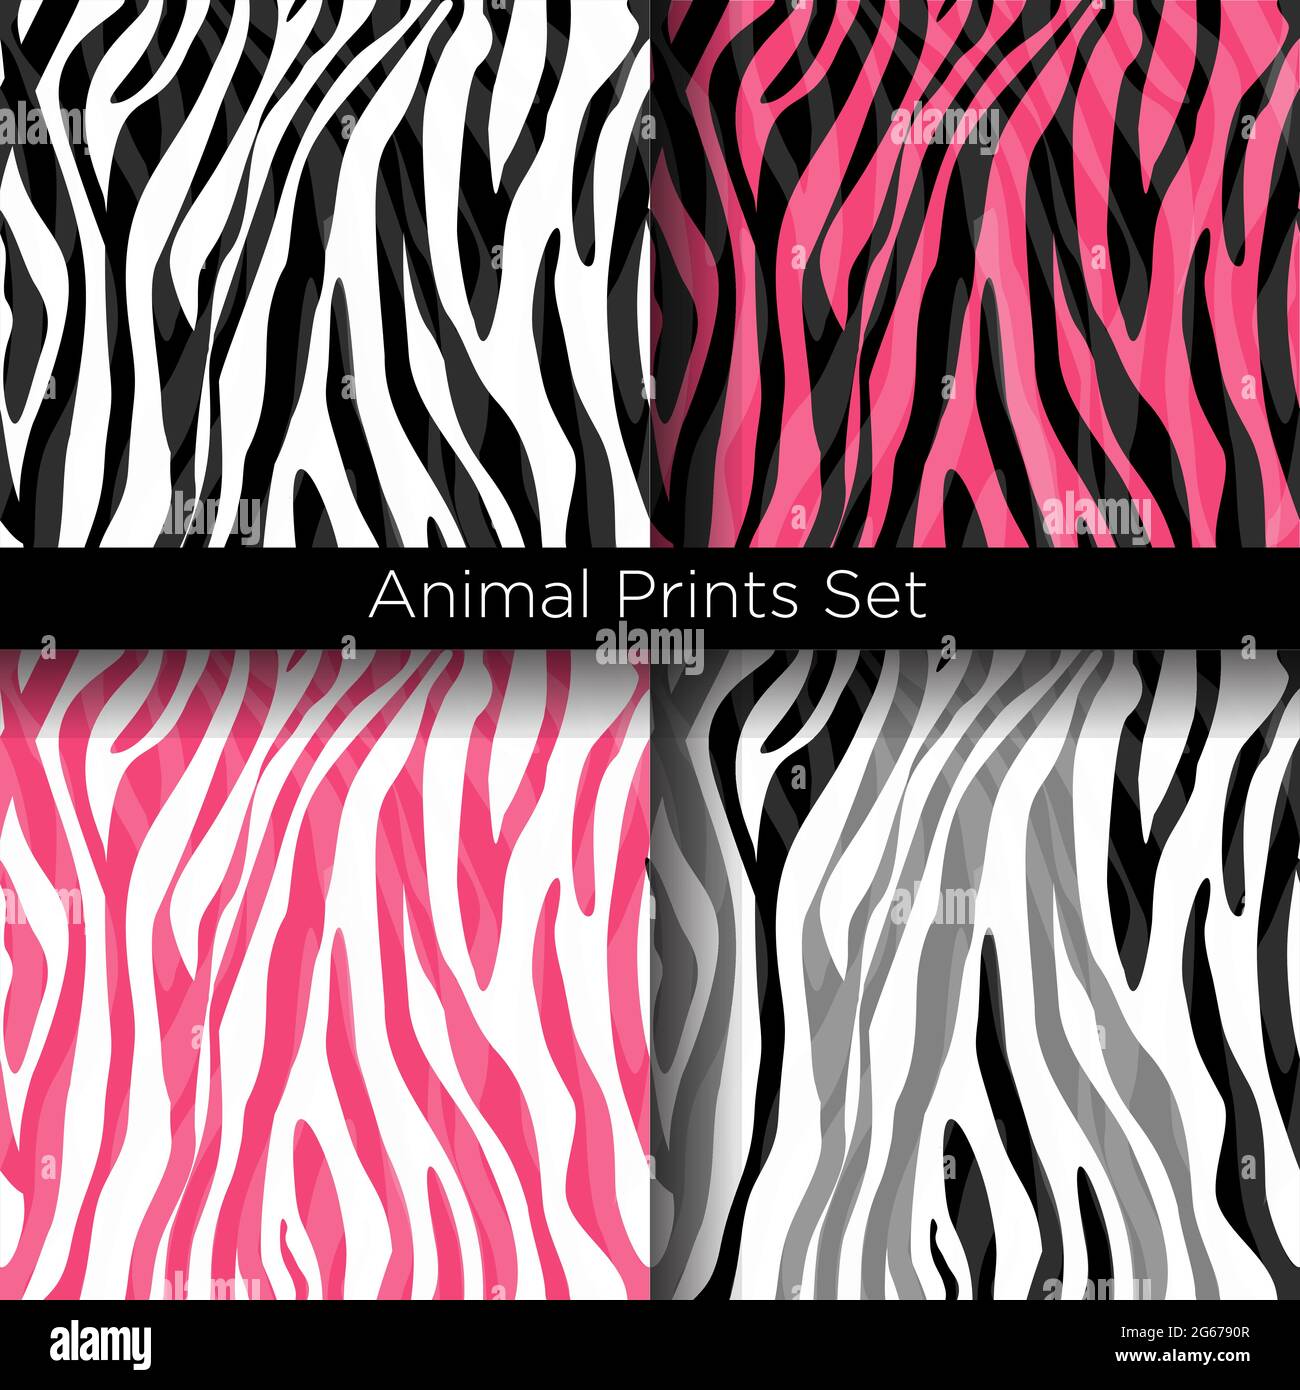 Vektor-Illustration Satz von afrikanischen Zebramustern in weißen, schwarzen und rosa Farben. Nahtlose Zebra-Kollektion mit Textur-Mustern. Stock Vektor